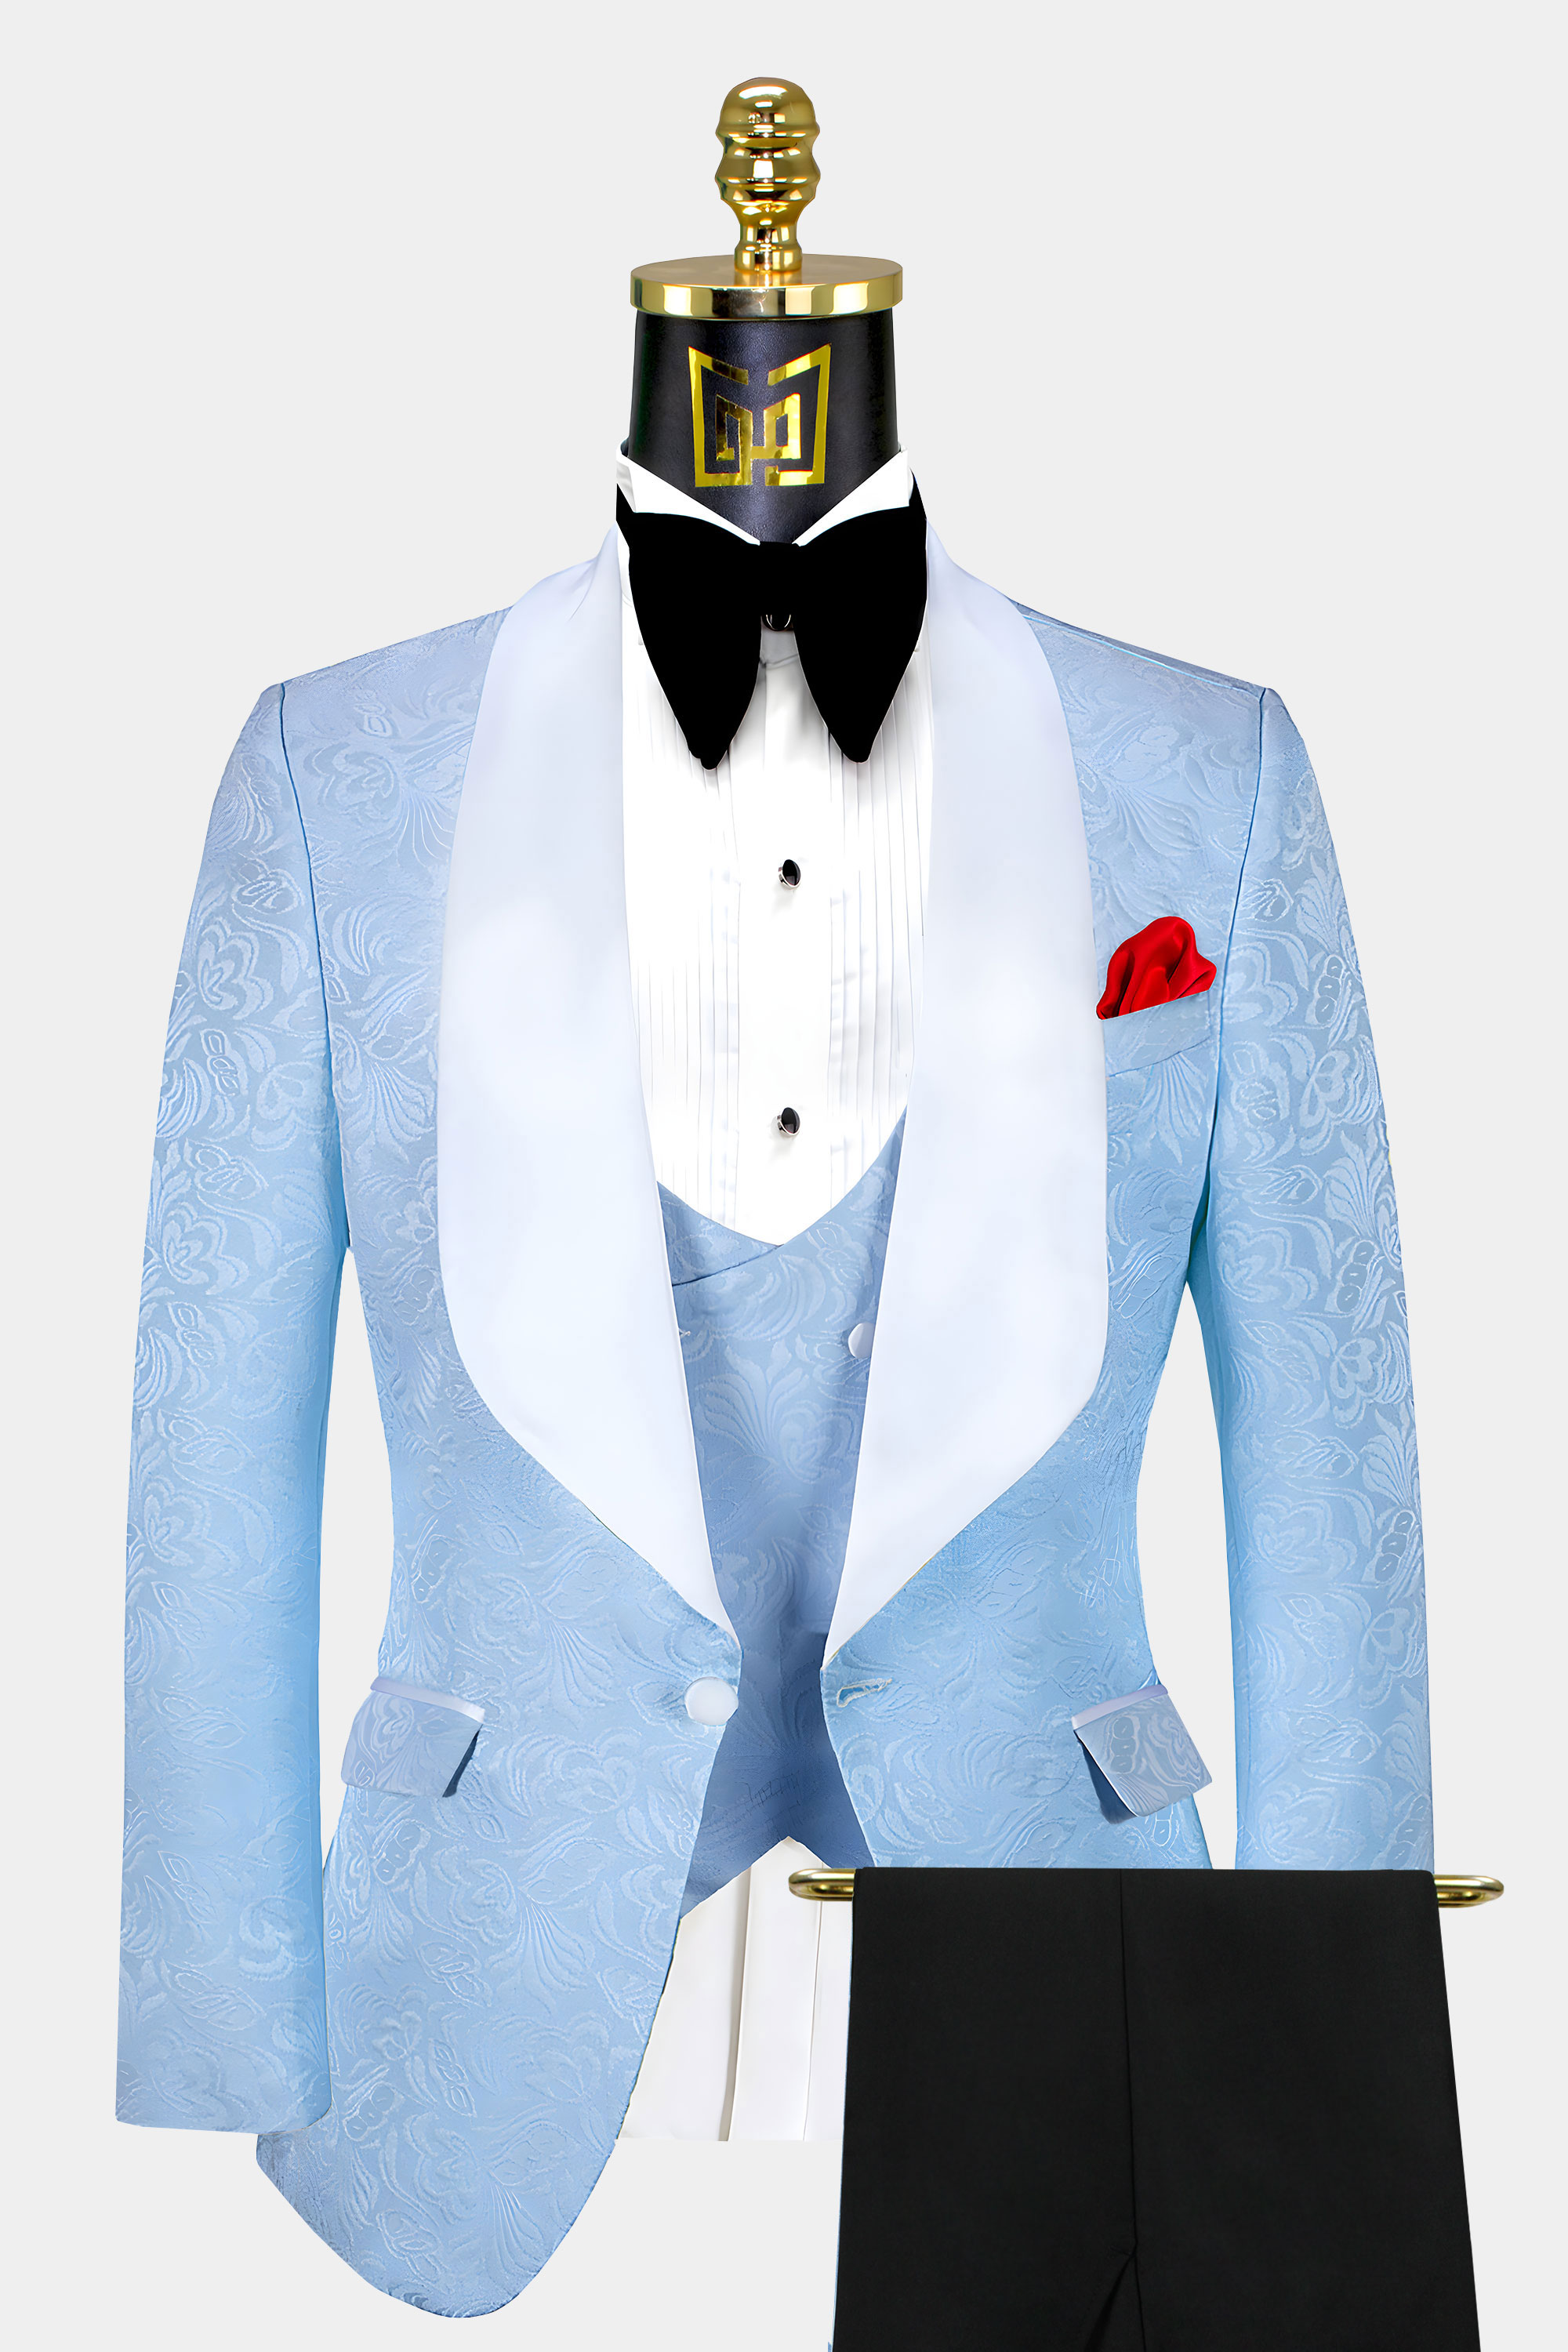 White-and-Baby-Blue-Tuxedo-Groom-Wedding-Suit-from-Gentlemansguru.com